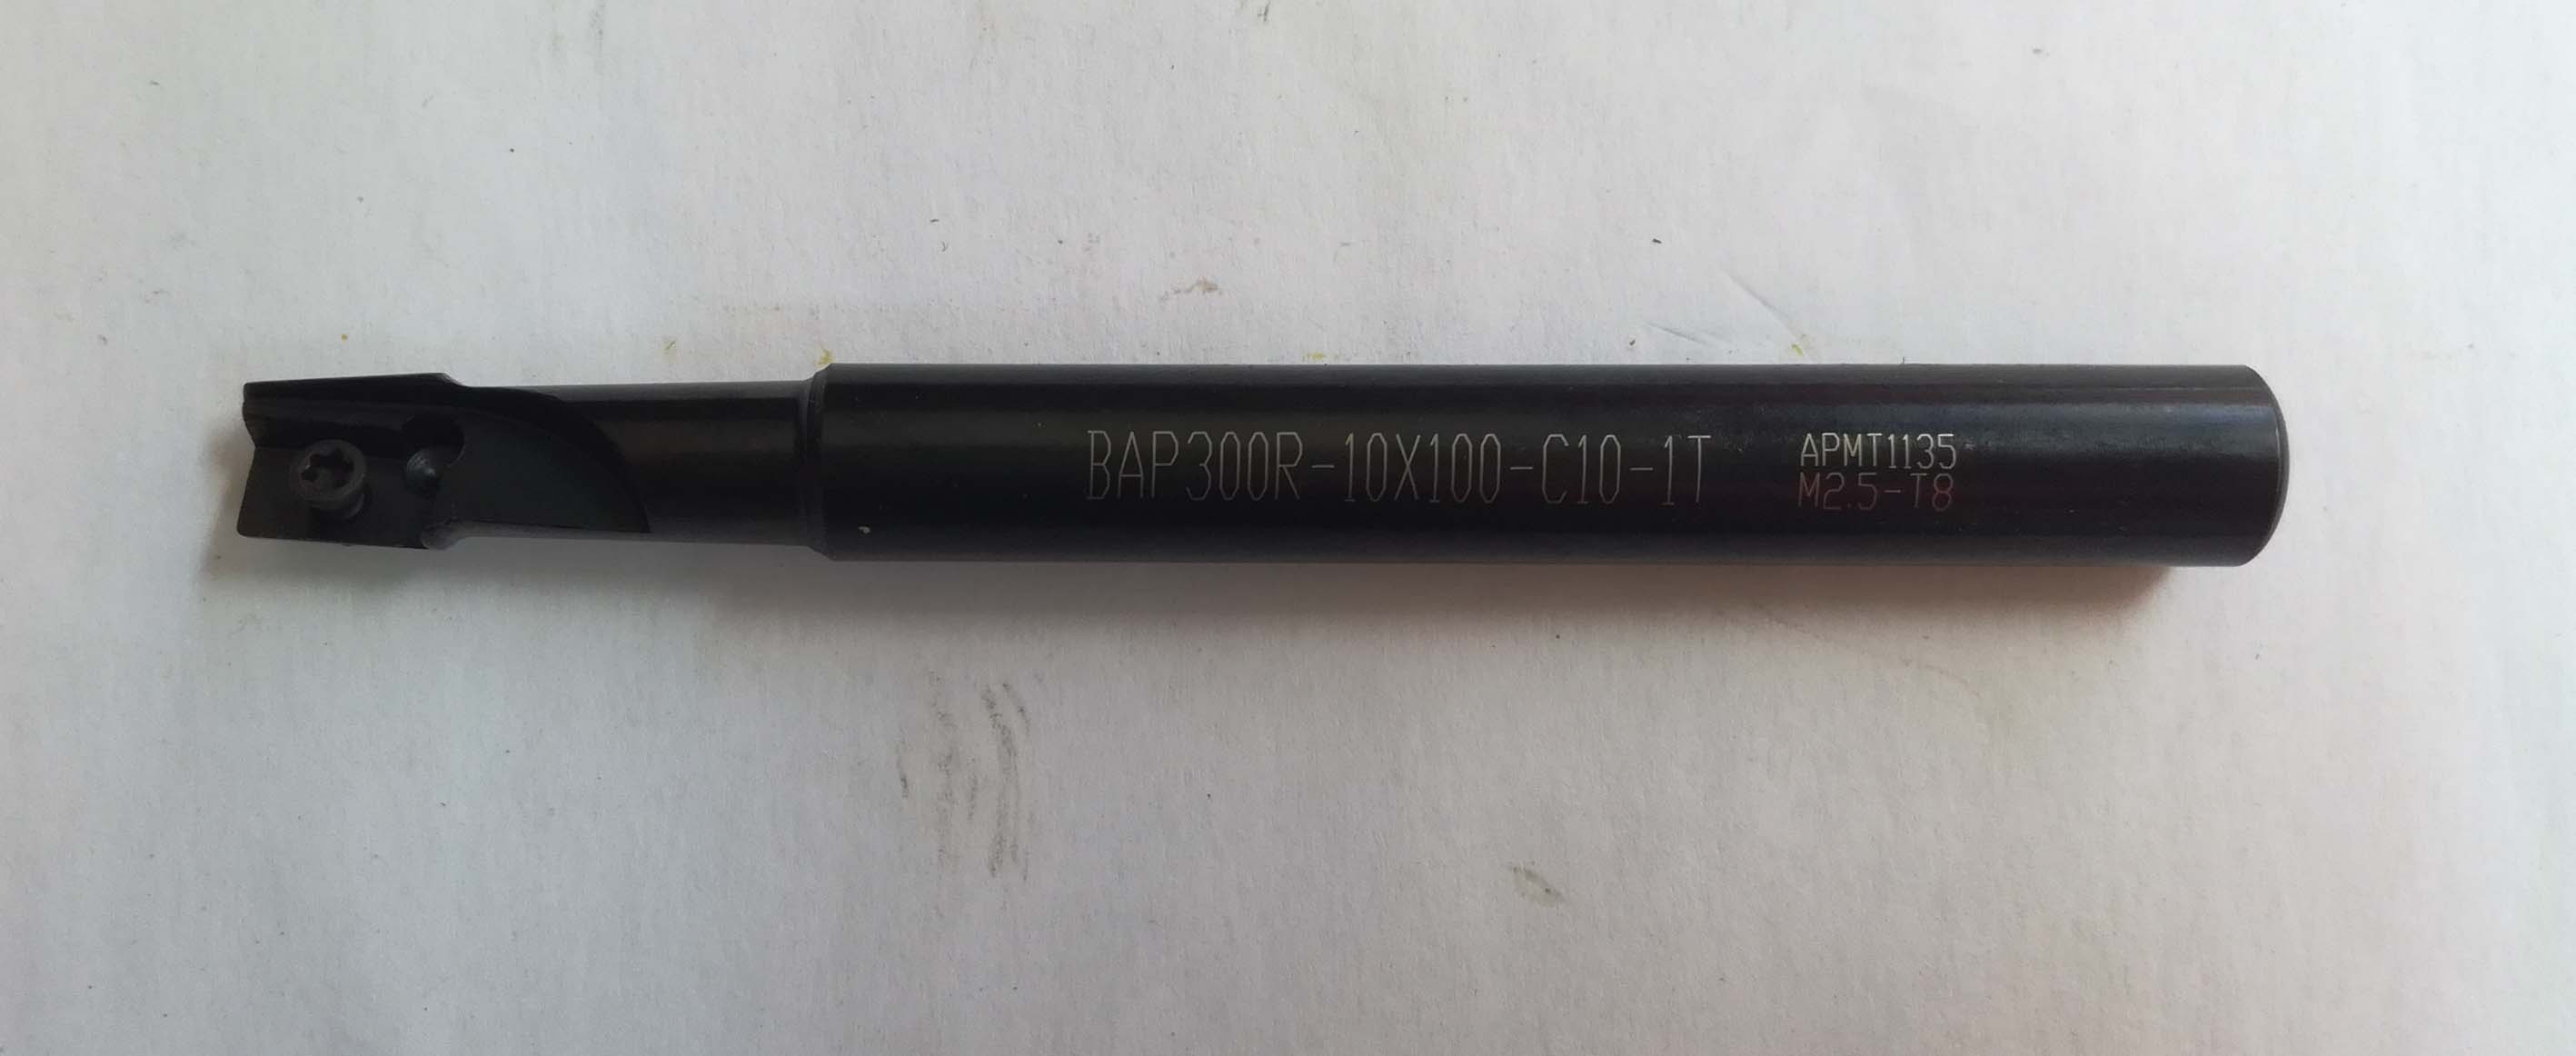 BAP300R-10-100-C10